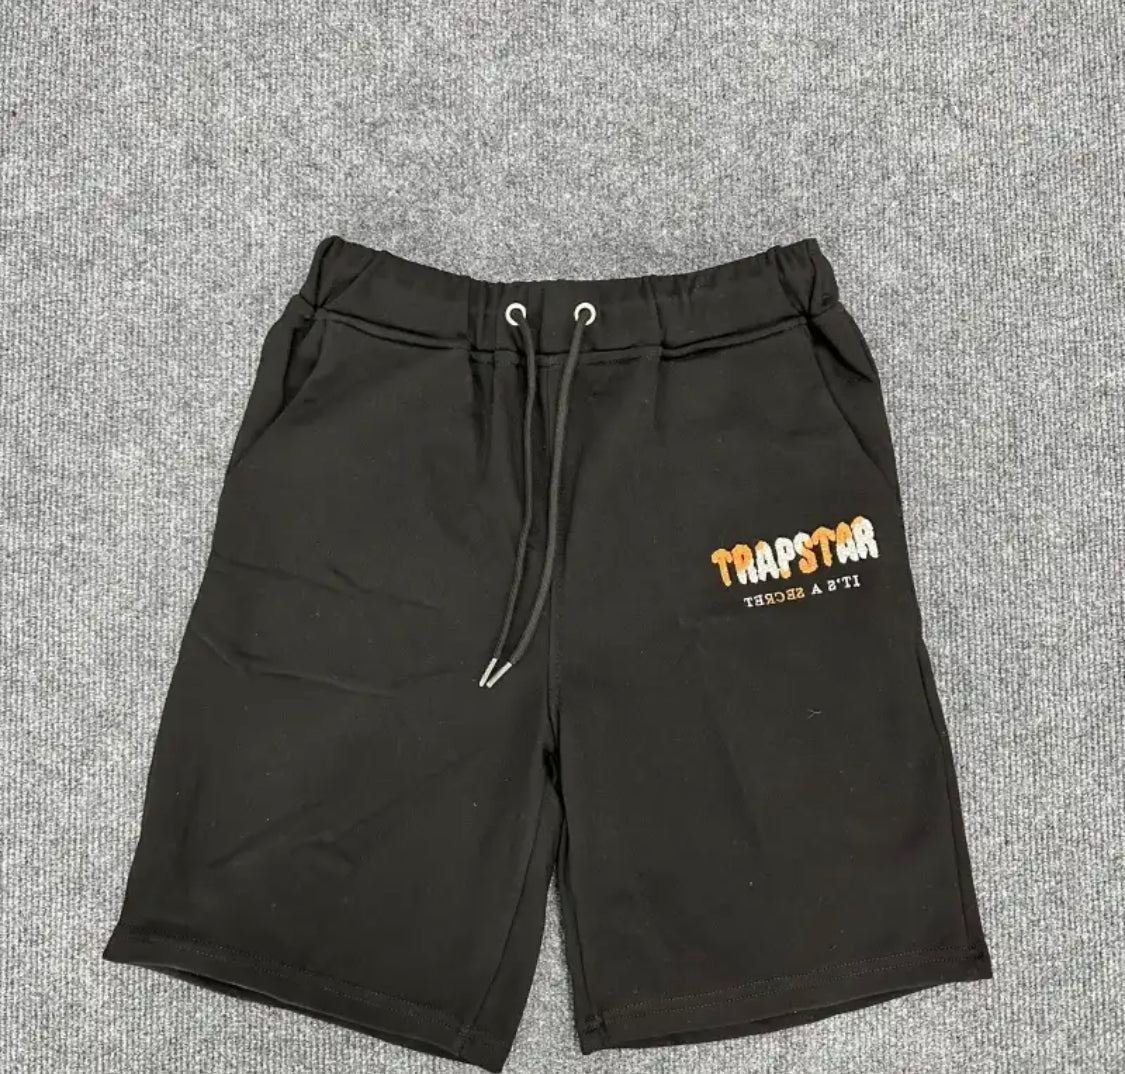 Chenile Shorts and tee -/Black/Orange